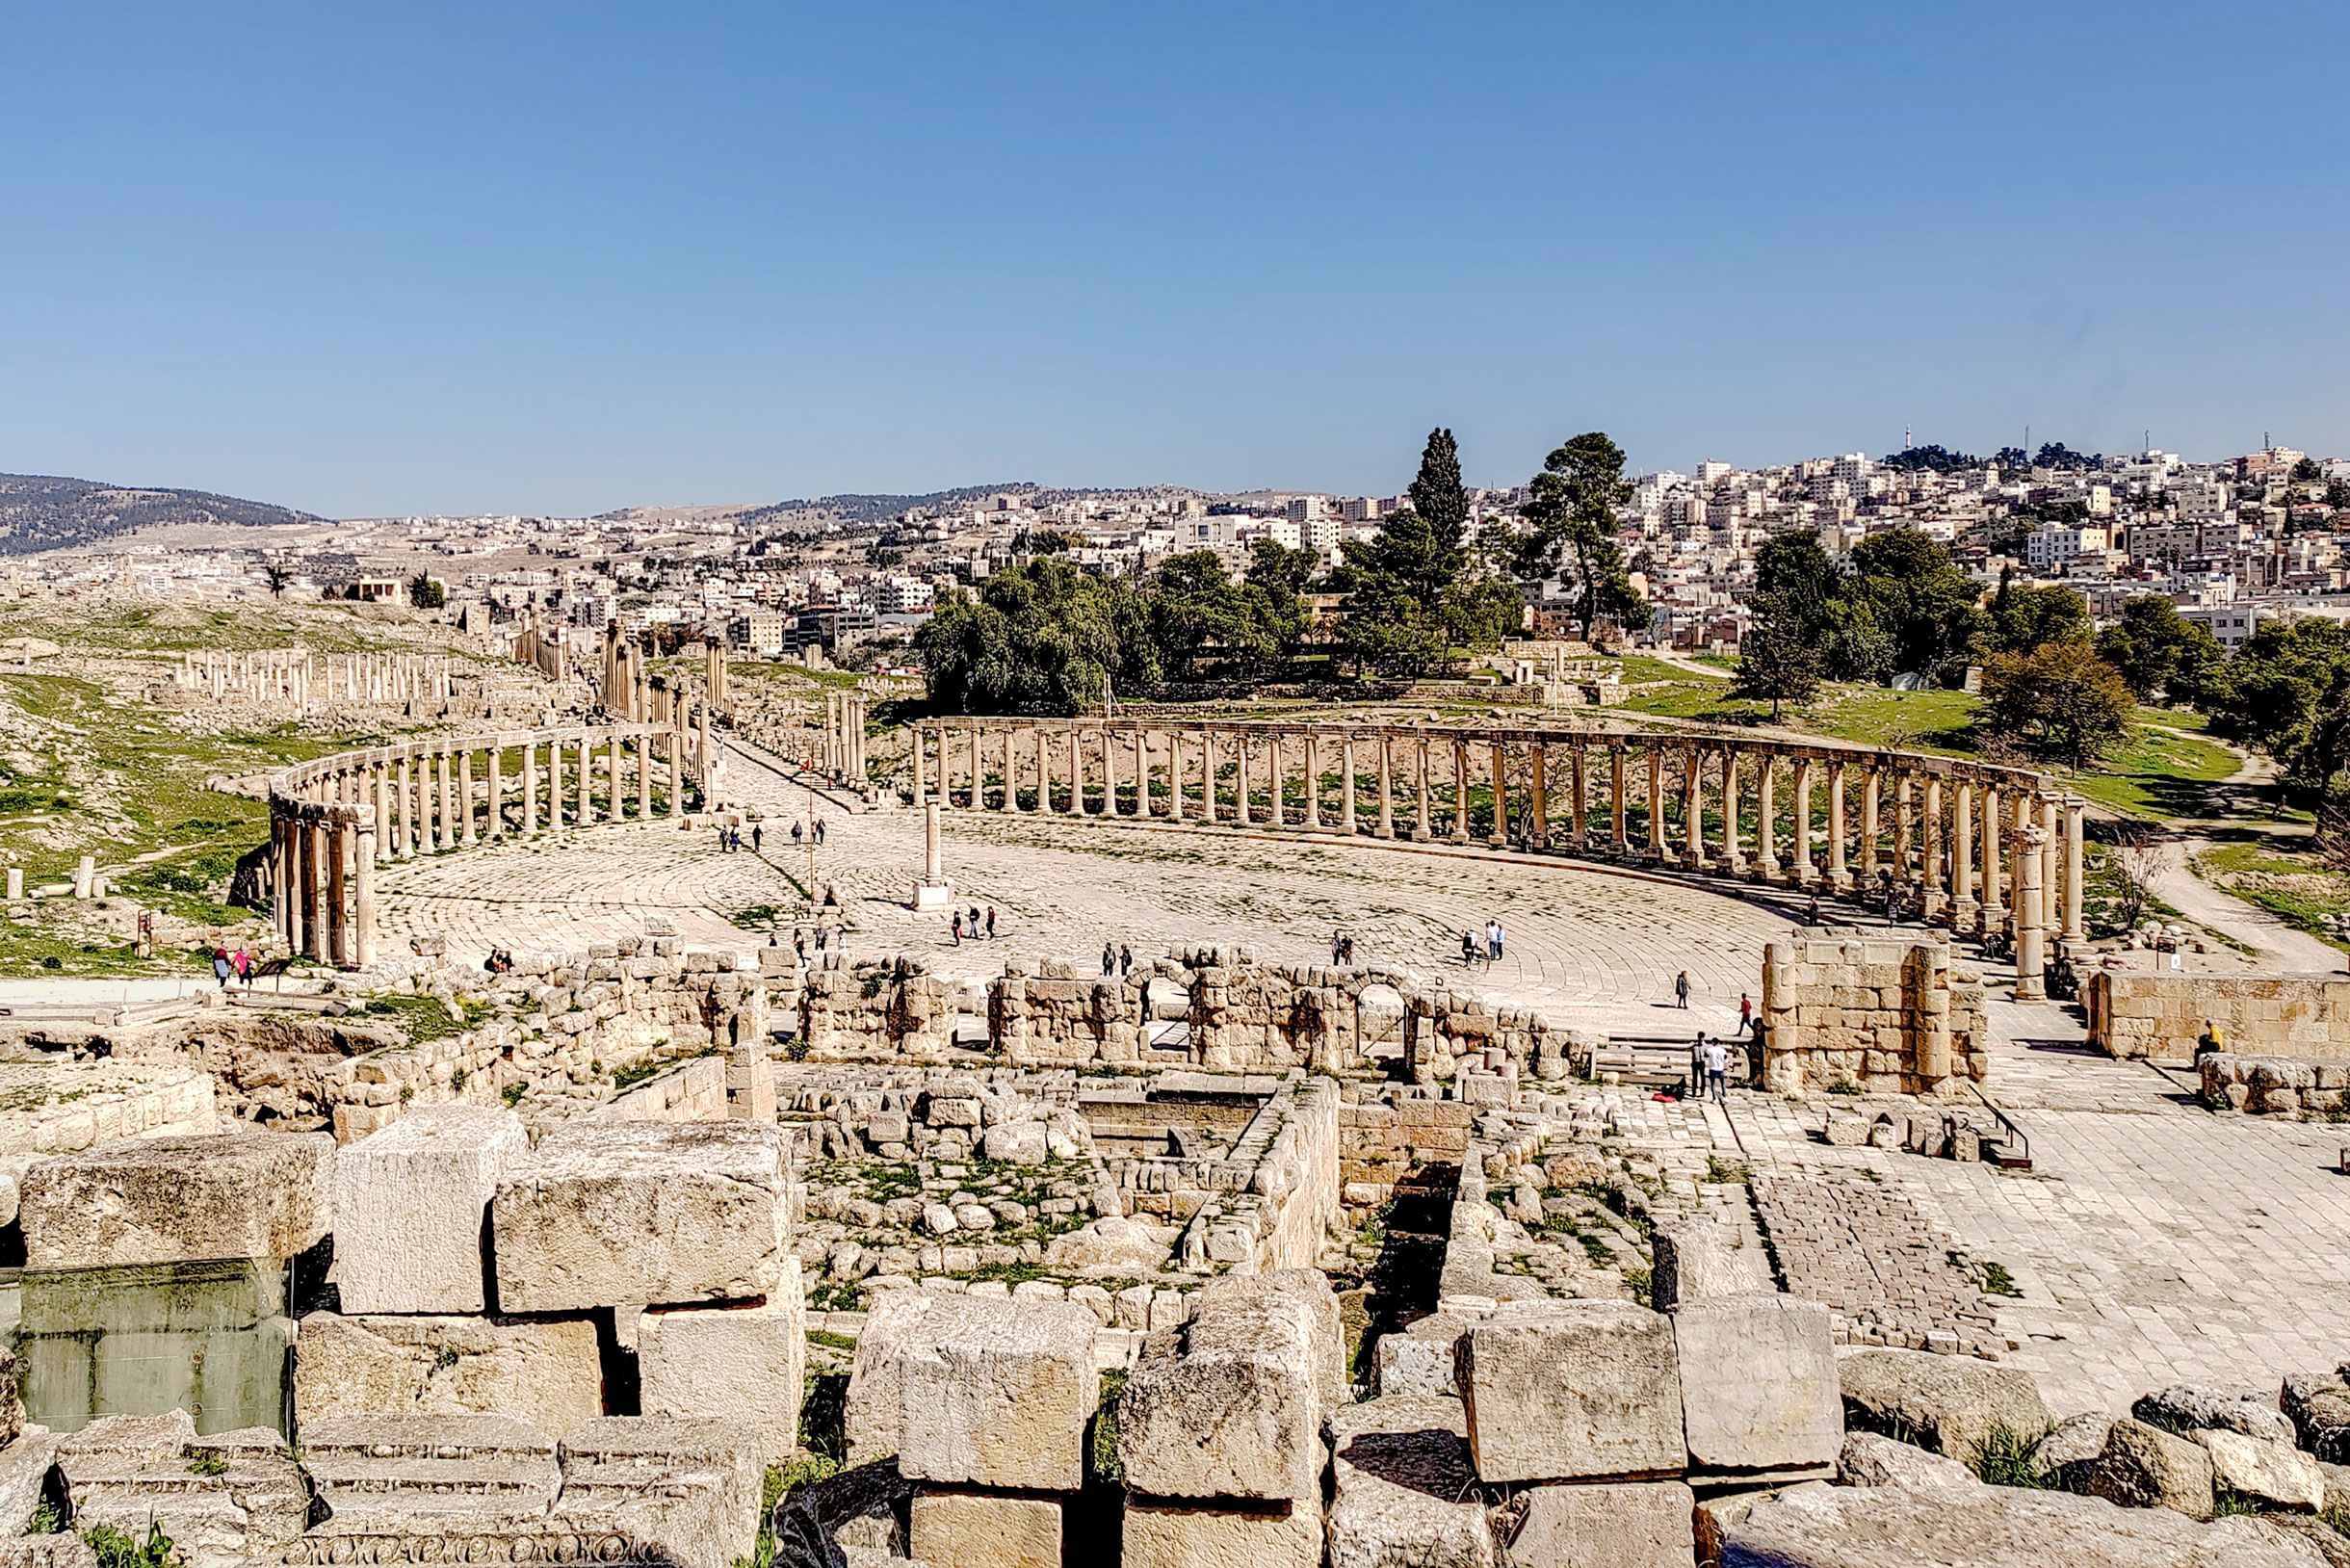 Руины античного города были обнаружены в 1806 году. На территории комплекса находится храм Артемиды, ипподром, амфитеатр, но больше всего впечатляет площадь с колоннадой